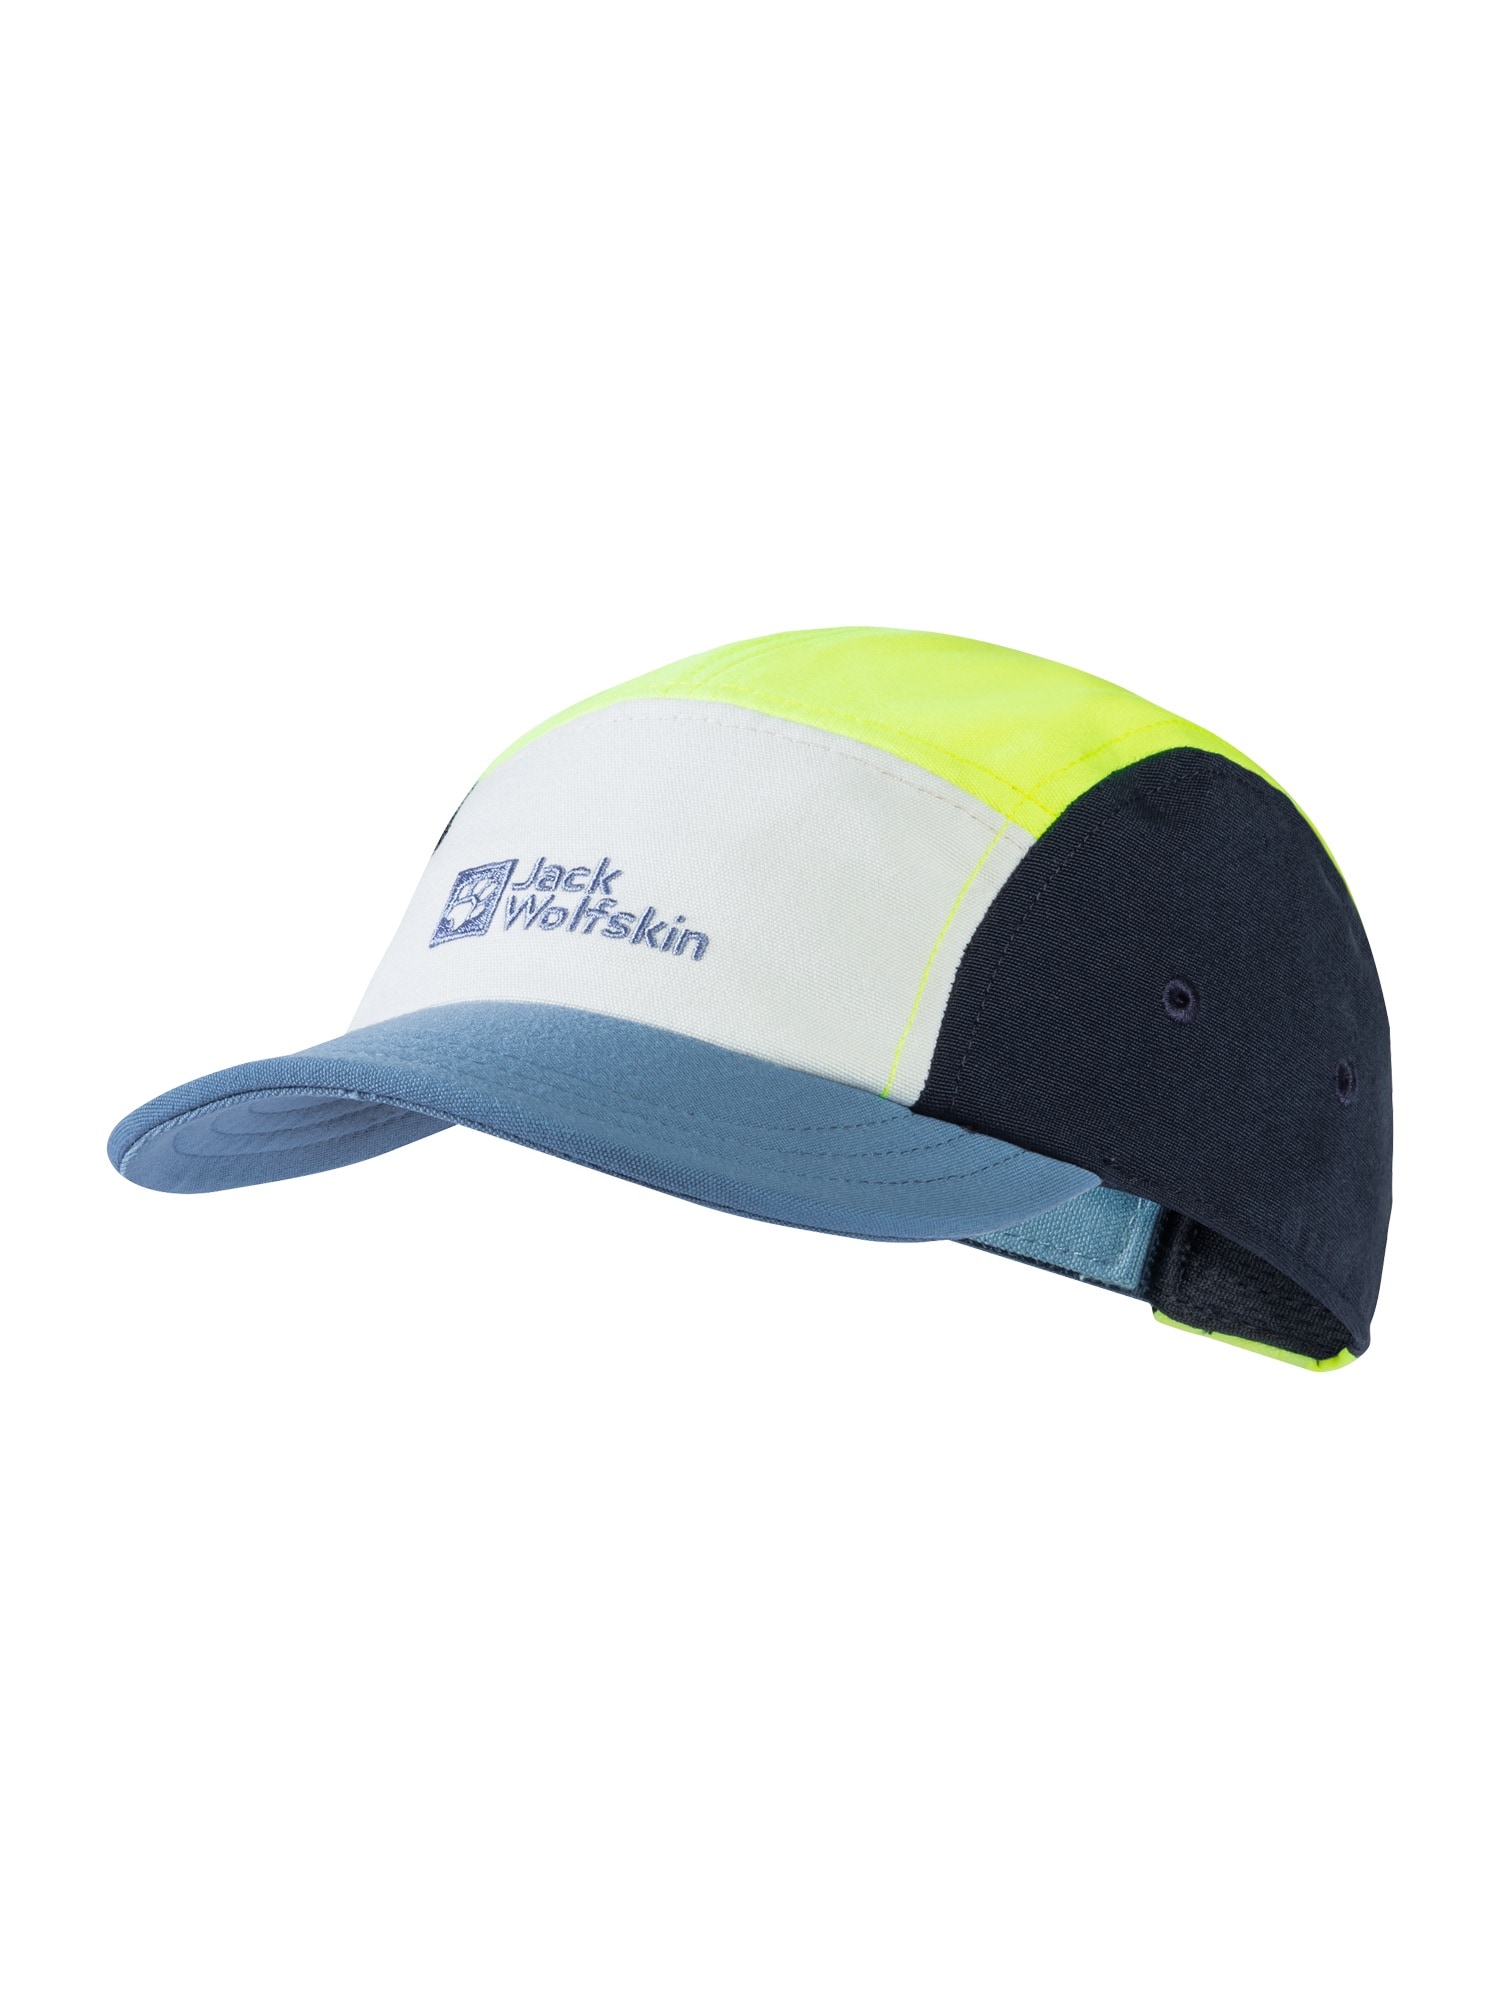 JACK WOLFSKIN Sportinė kepurė 'WIVID' tamsiai mėlyna / opalo / pastelinė mėlyna / neoninė geltona